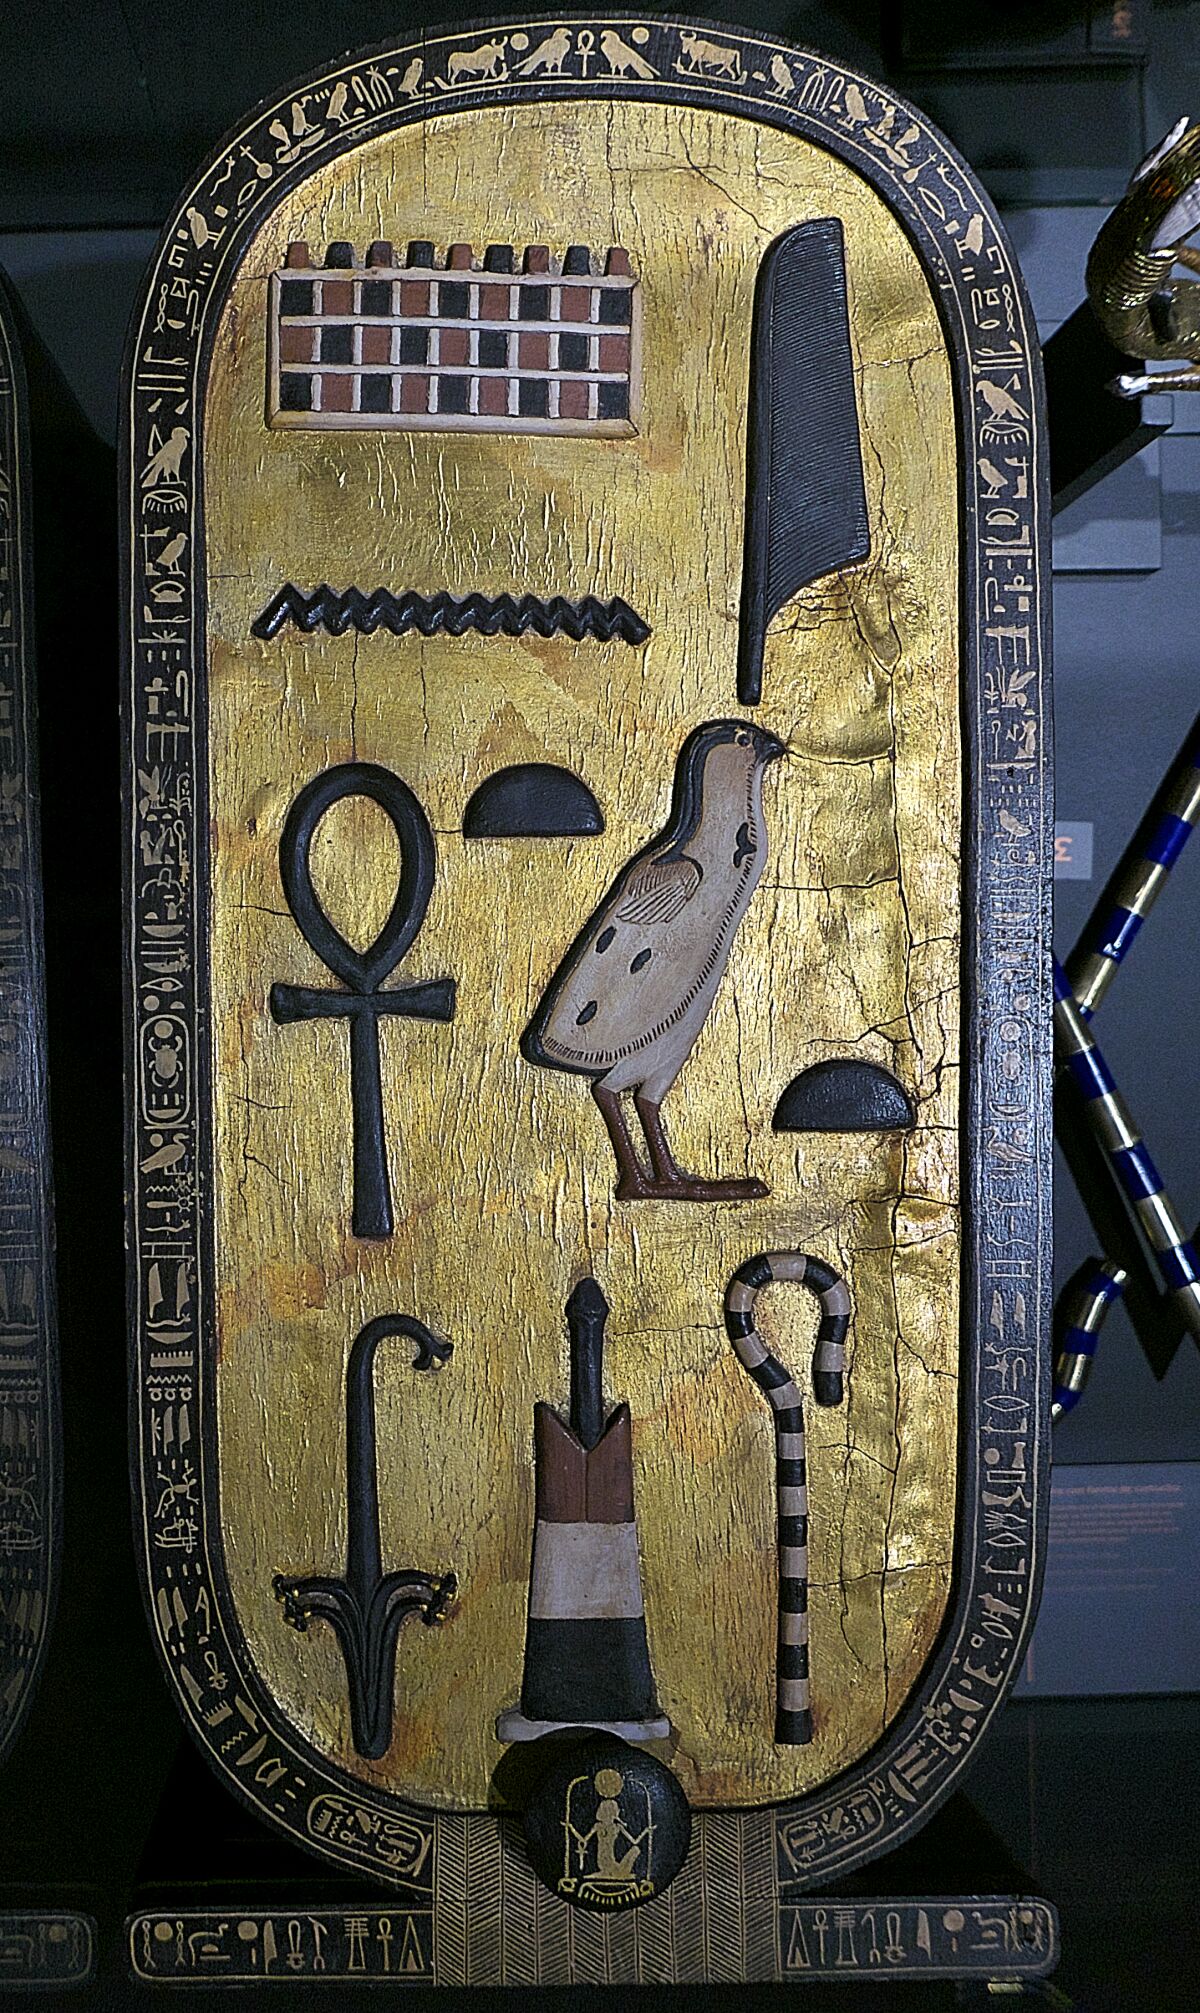 Tapa de joyero con forma de cartucho y jeroglífico, encontrado en la tumba de Tutankamón.